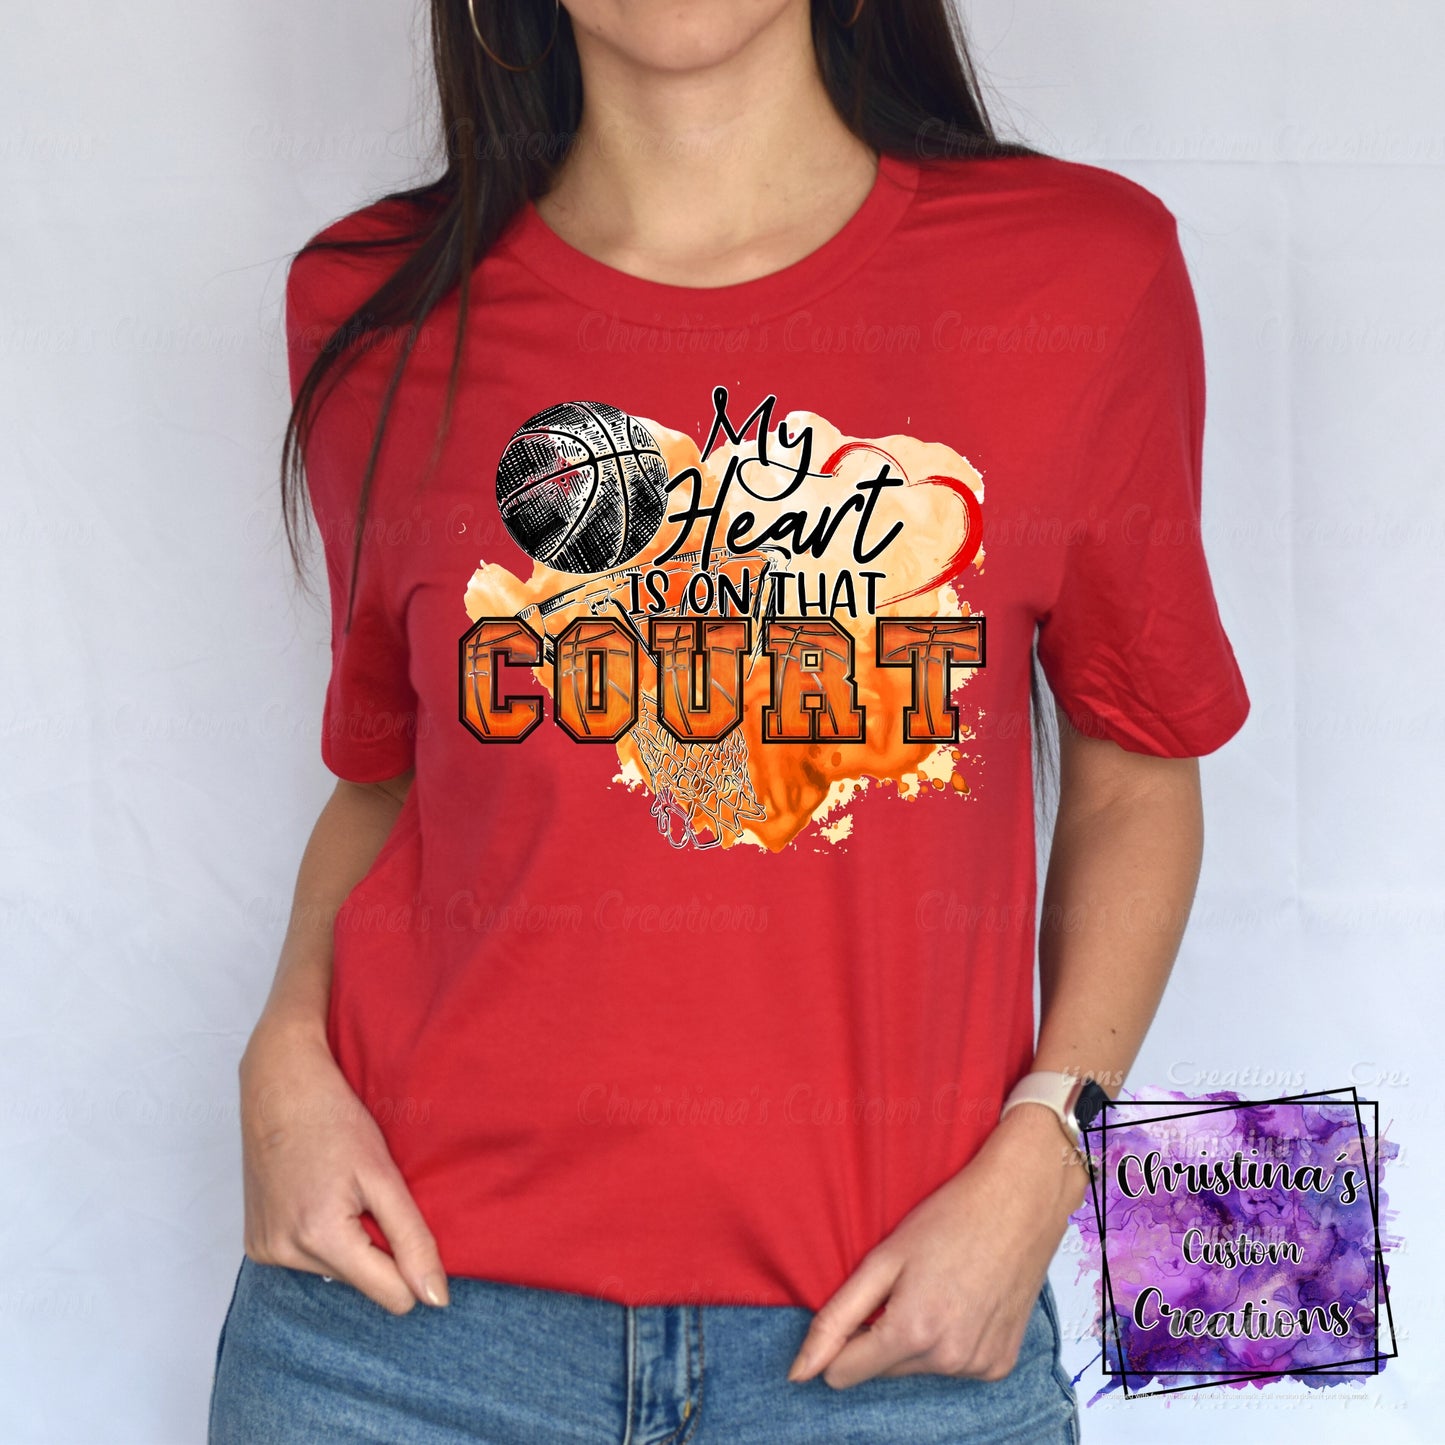 My Heart is on that Court T-Shirt | Trendy School Spirit Shirt | Basketball Shirt | Super Soft Shirts for Women | Bella Canvas